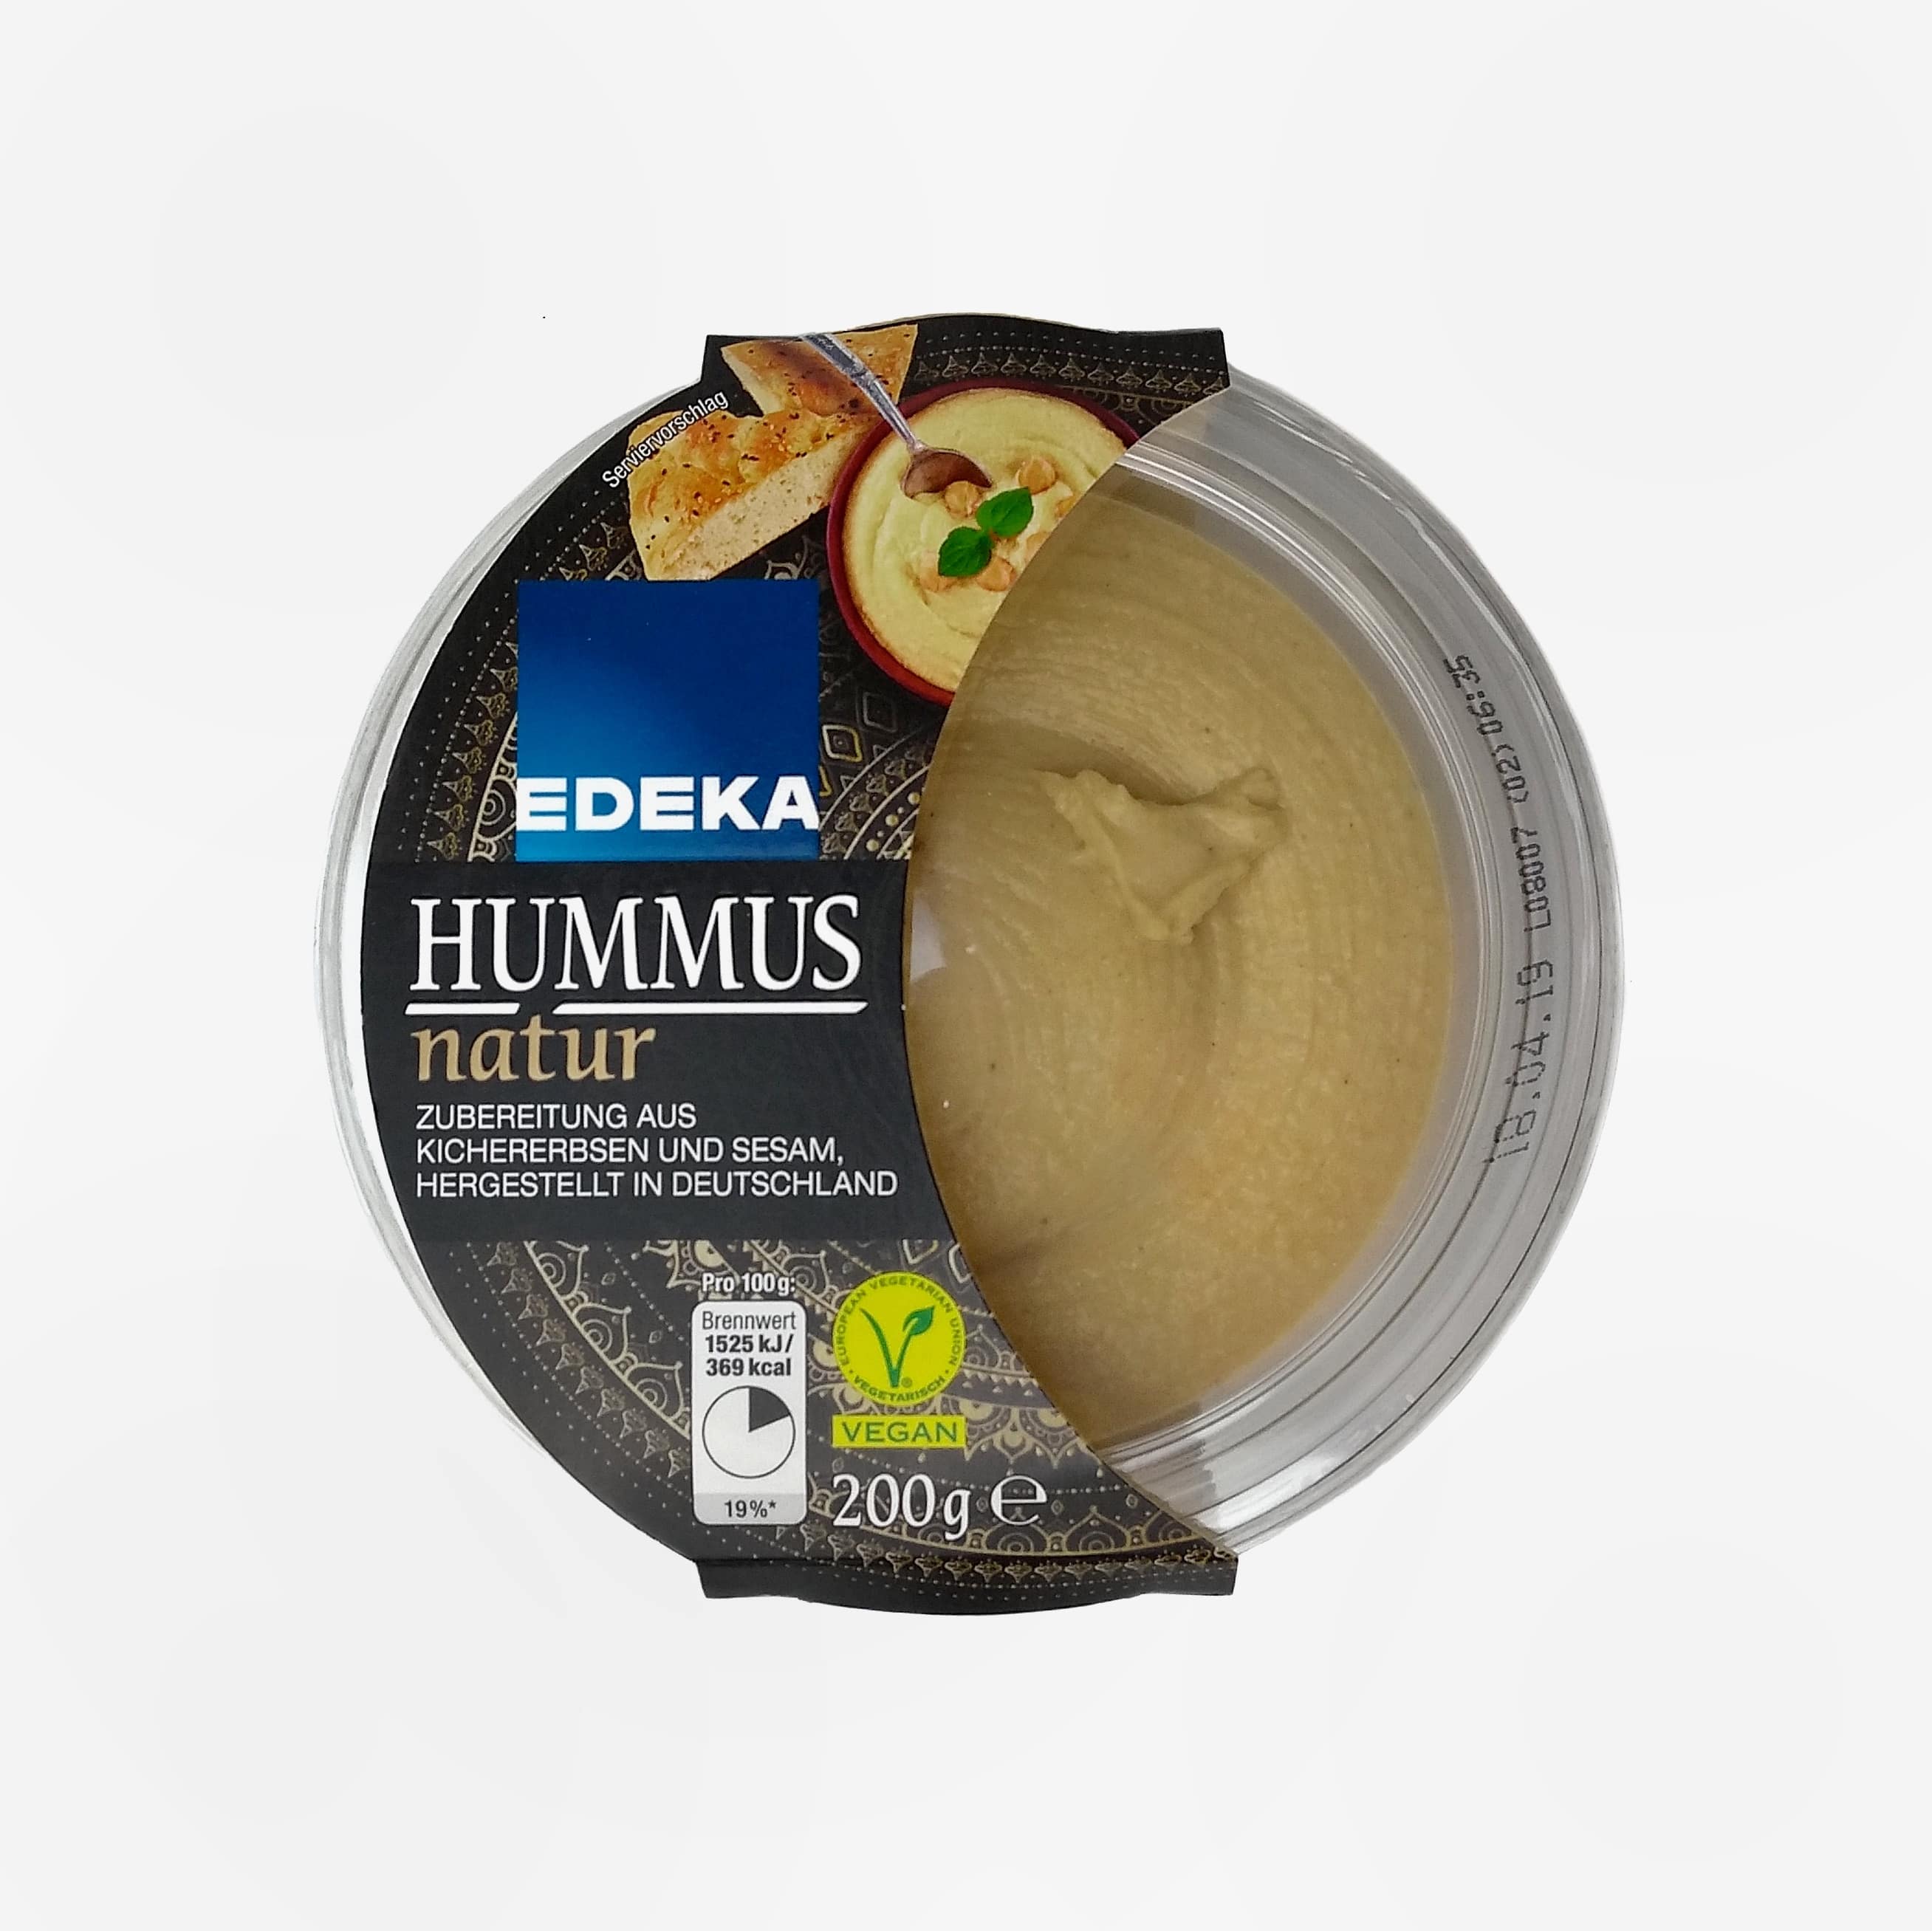 Hummus natur